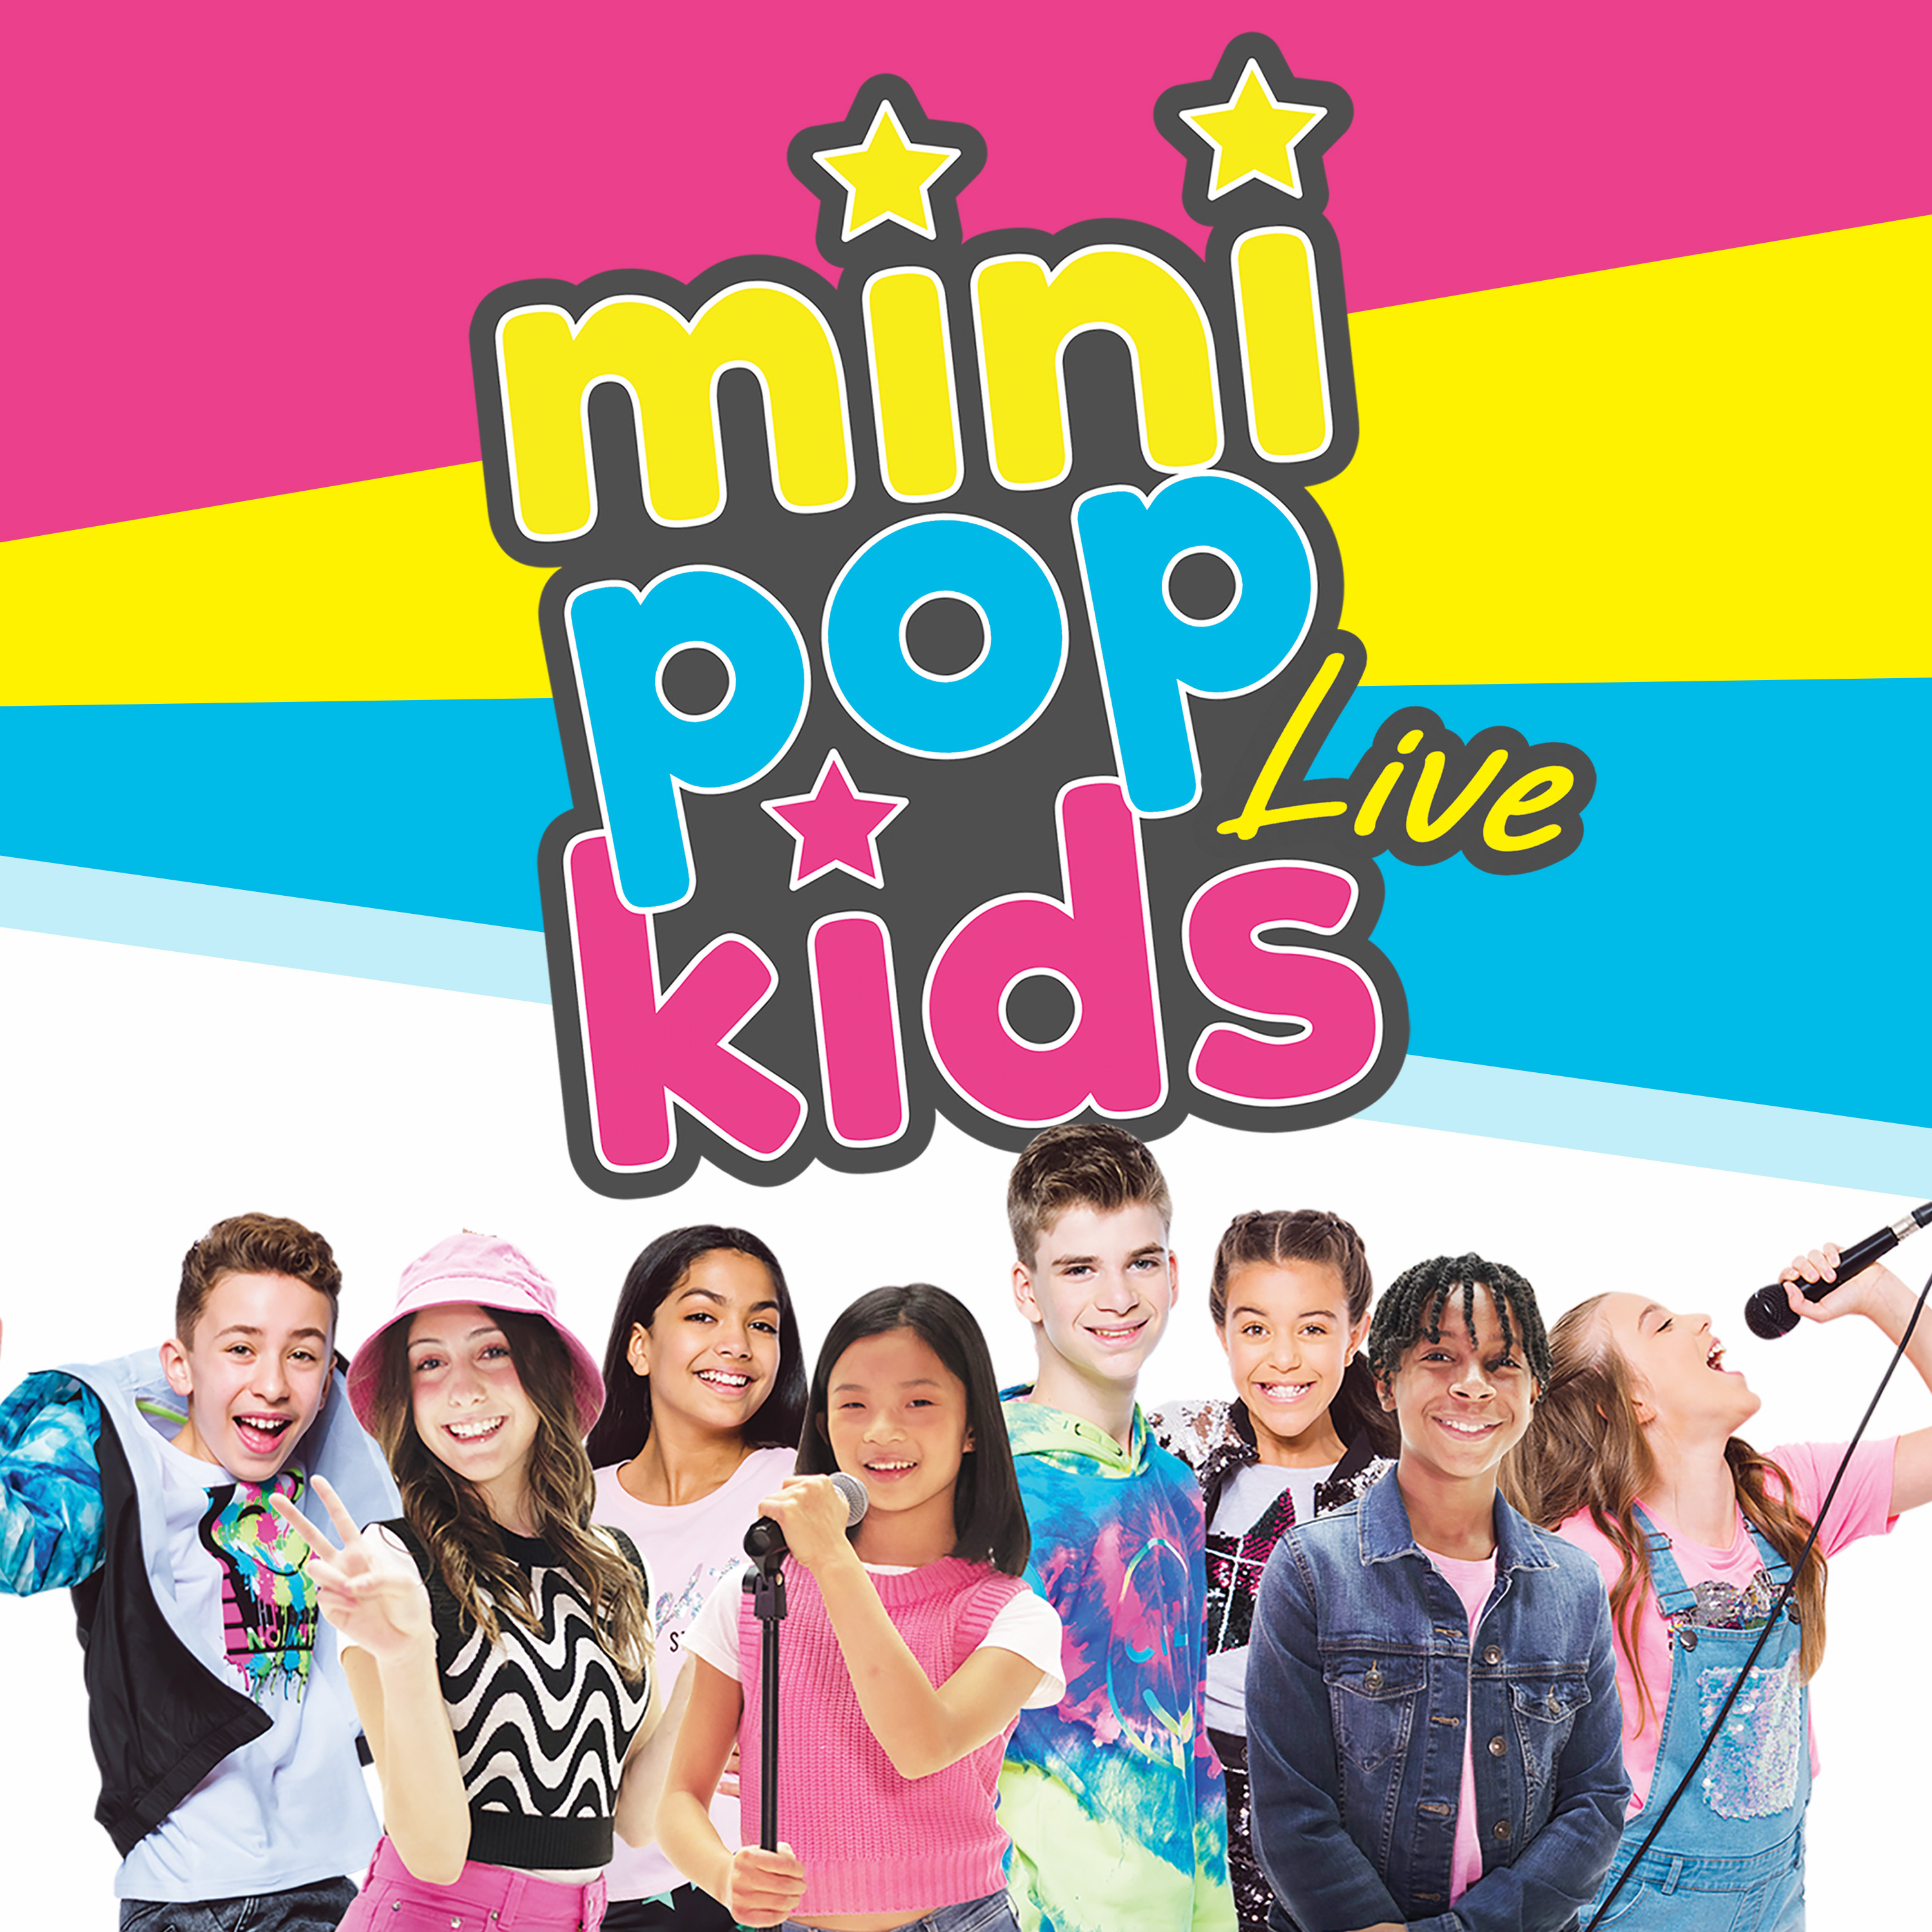 Mini Pop Kids 